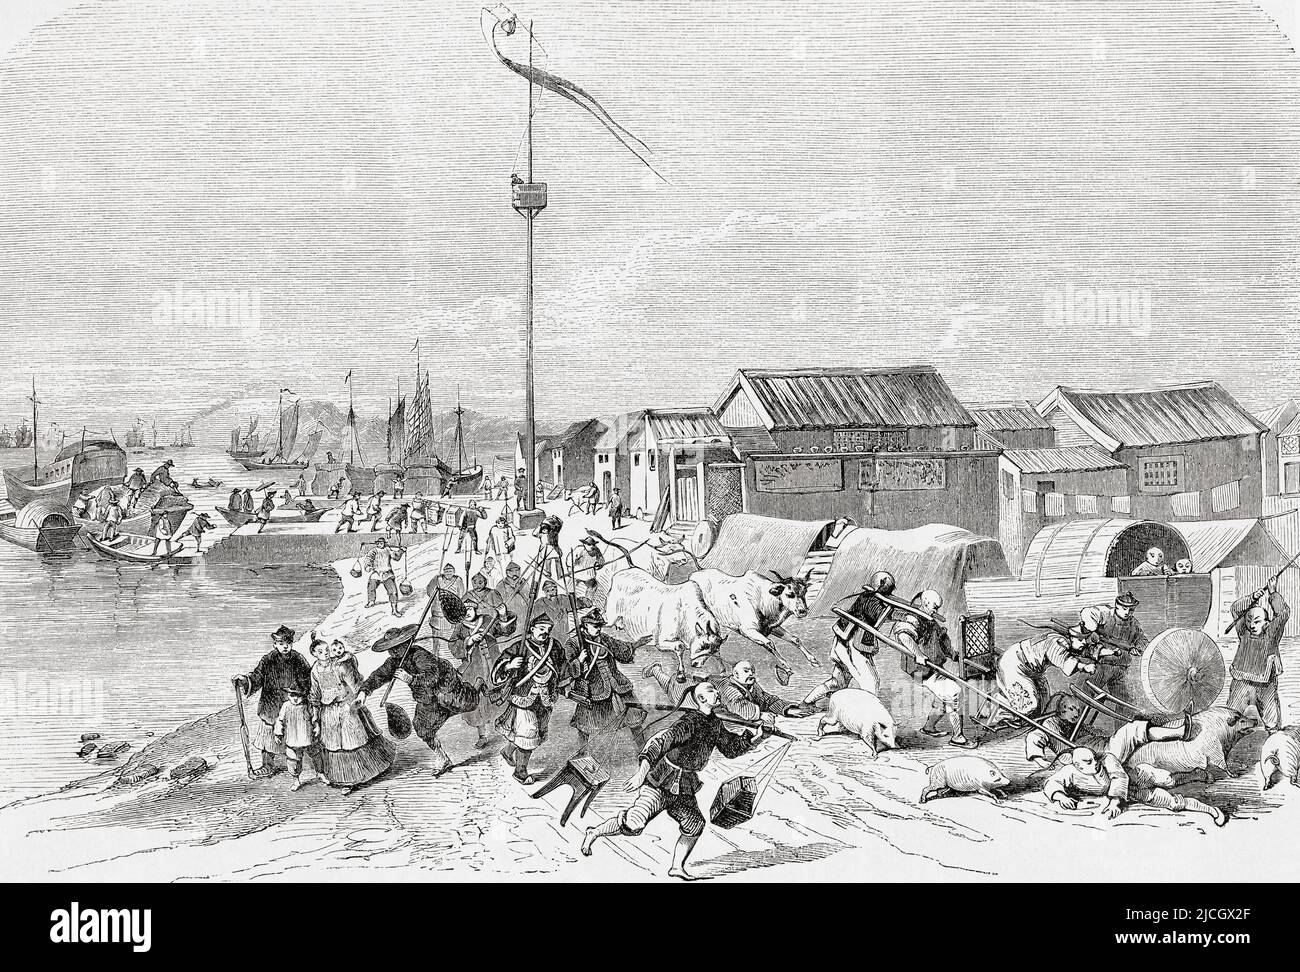 Störungen im Hafengebiet von Kanton (heute Guangzhou), China während des Roten Turban-Aufstandes von 1854 - 1856. Aus L'Univers Illustre, Paris, 1859 Stockfoto